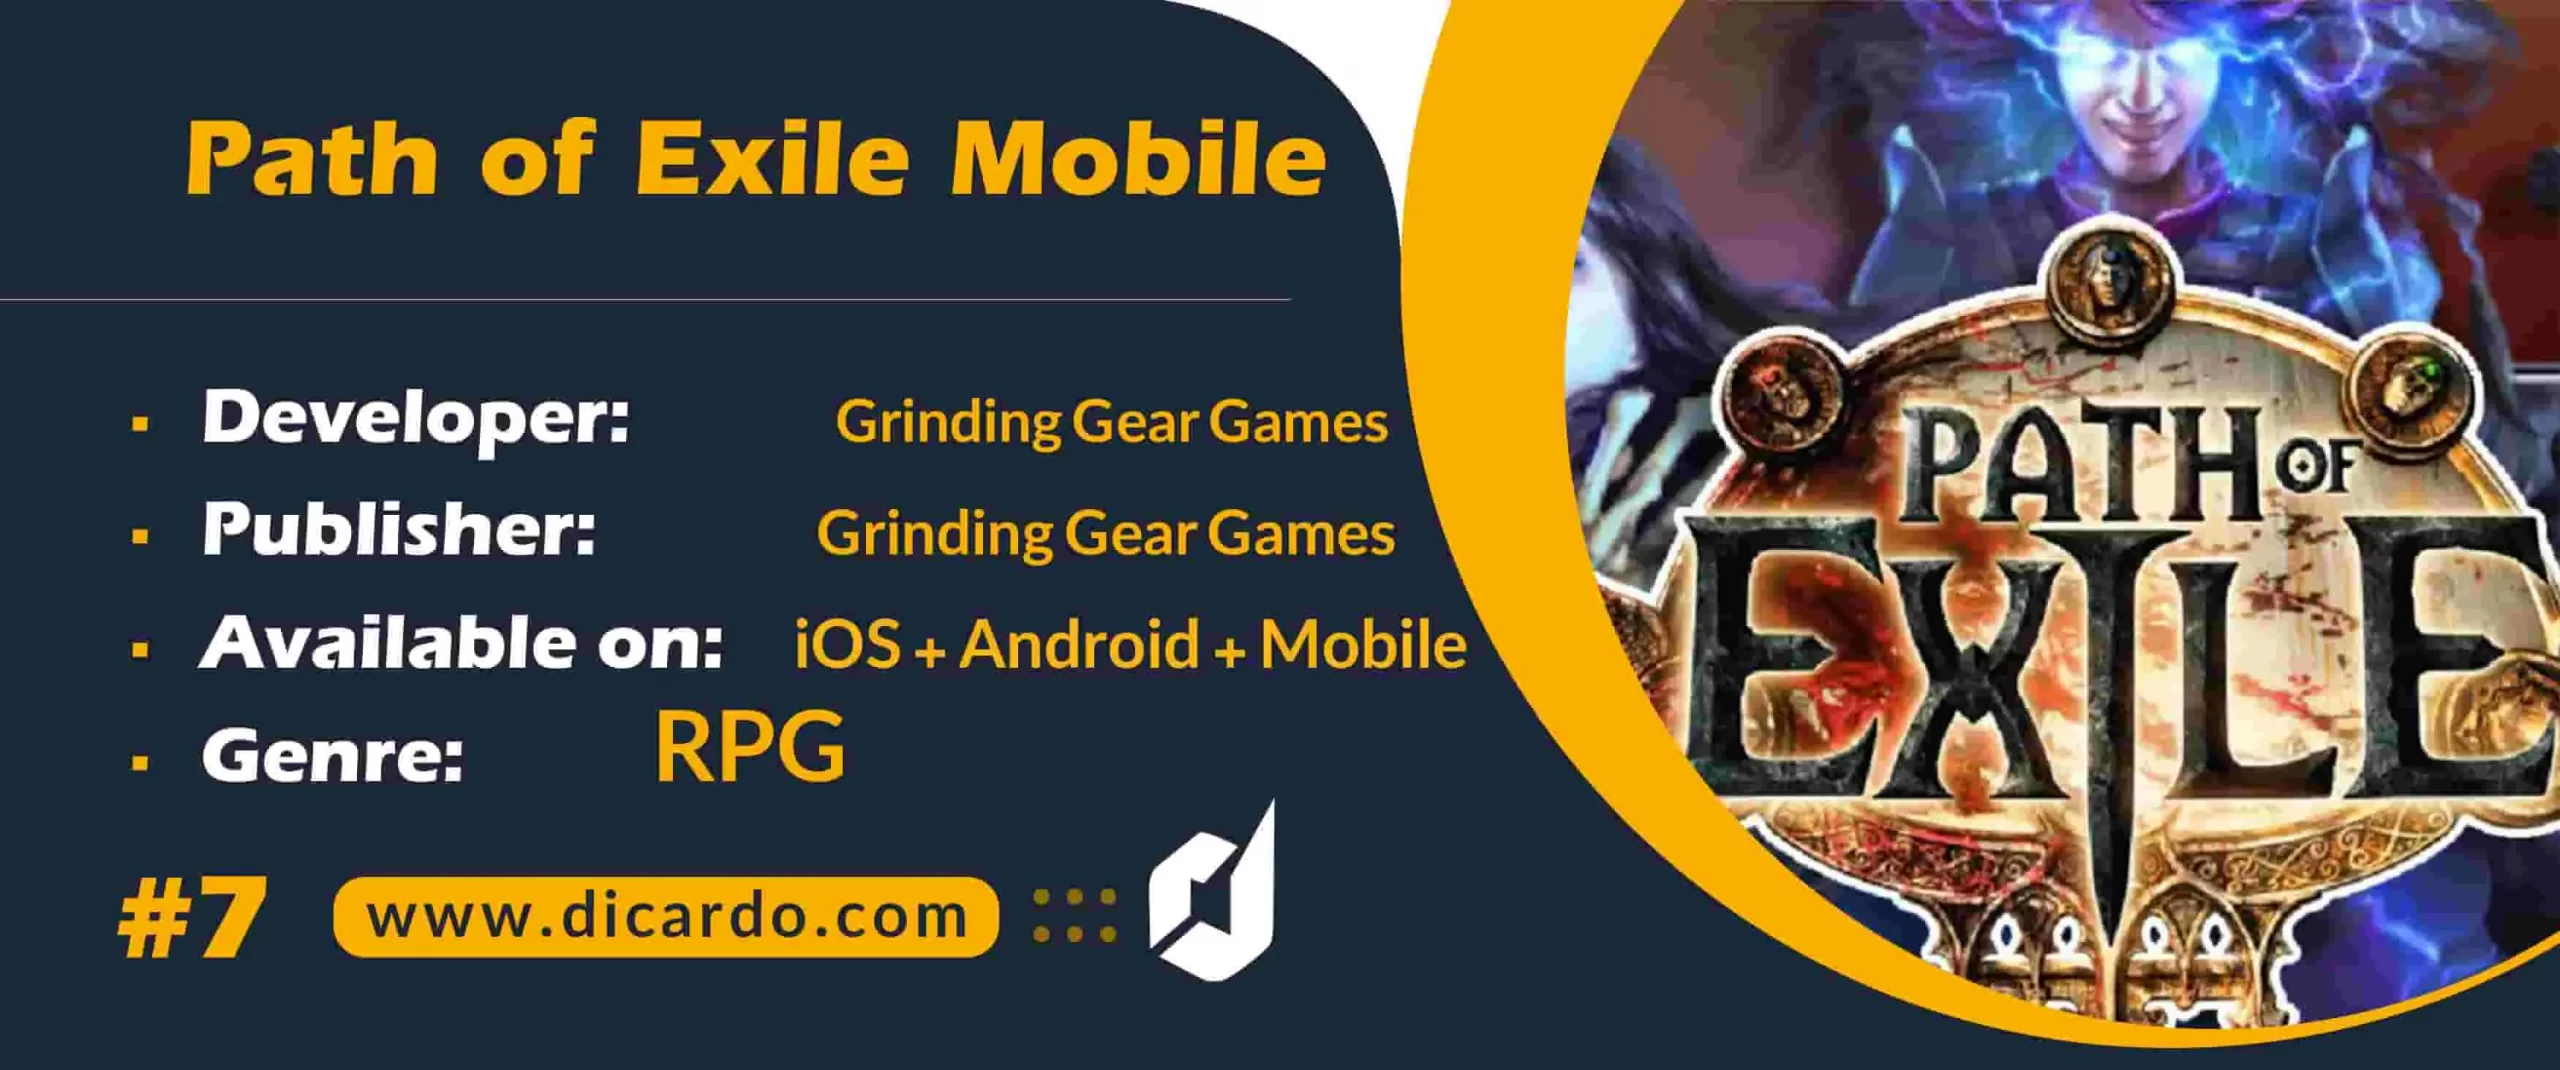 #7 پت او اکزل موبایل Path of Exile Mobile از بهترین بازیهای مشابه دیابلو ایمورتال در انتظار انتشار